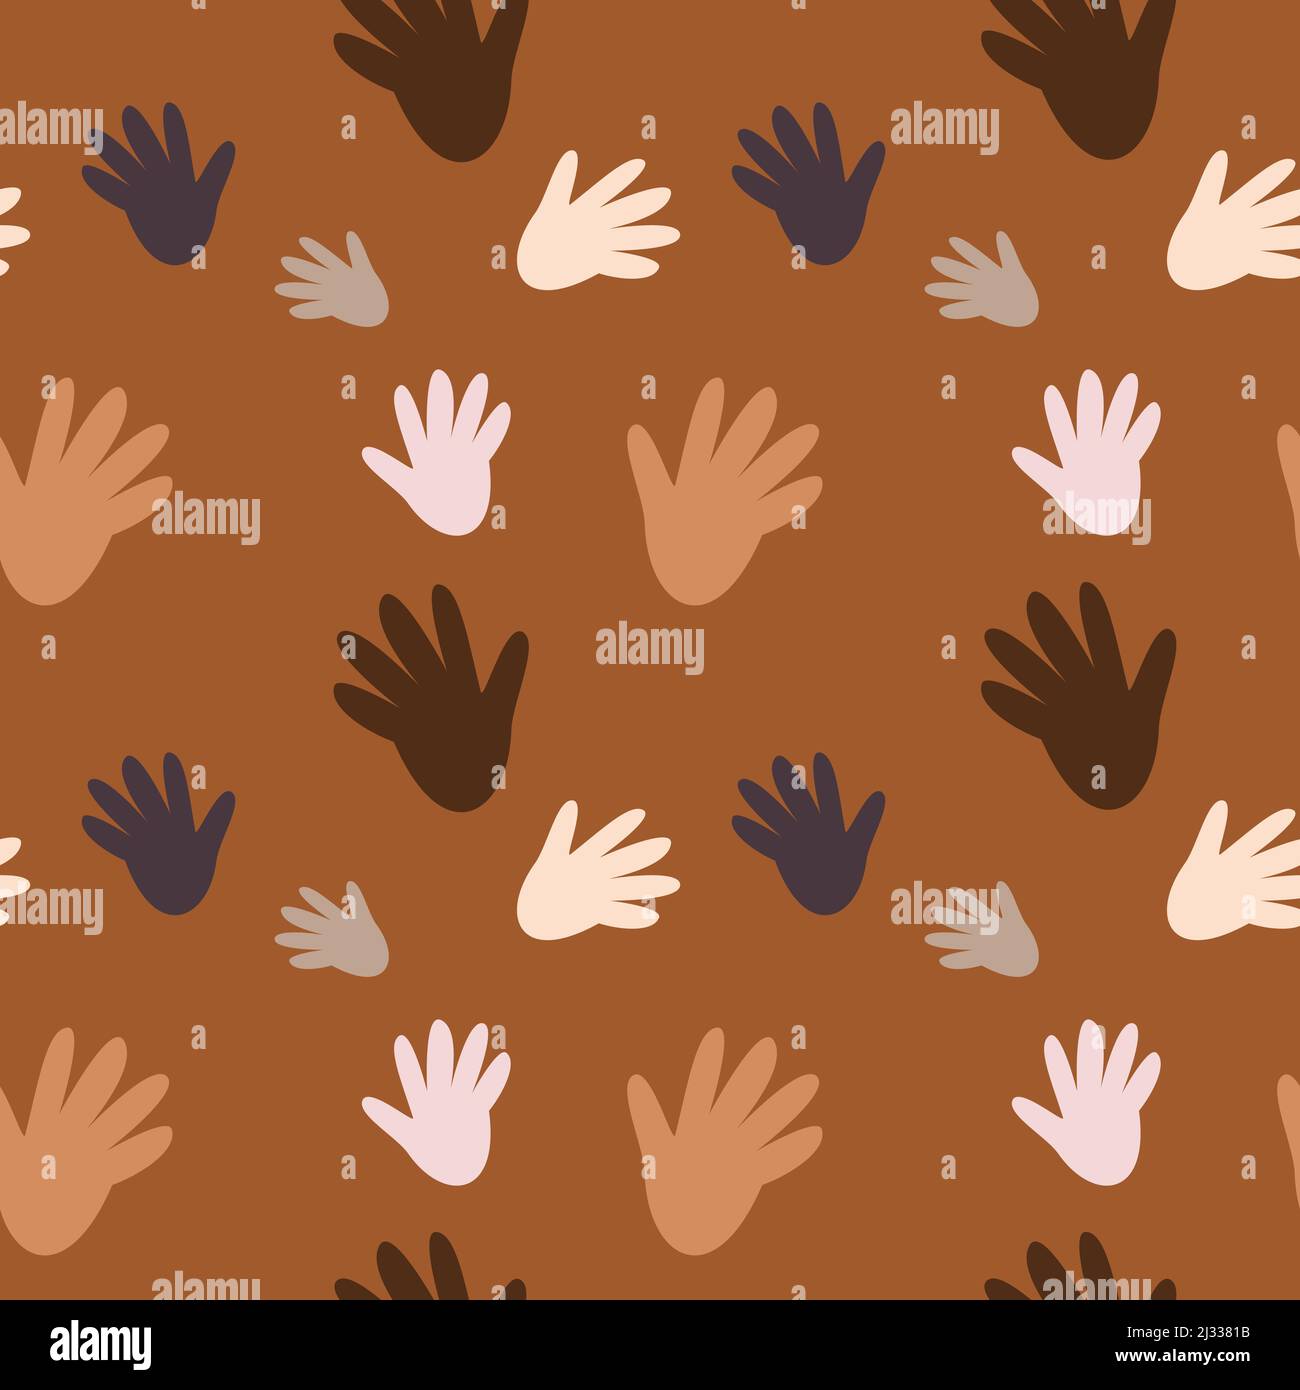 Nahtloses Muster auf braunem Hintergrund. Gleiche Hände, verschiedene Farben, verschiedene Größen. Mit Farben rosa, weiß, braun und grau Stock Vektor